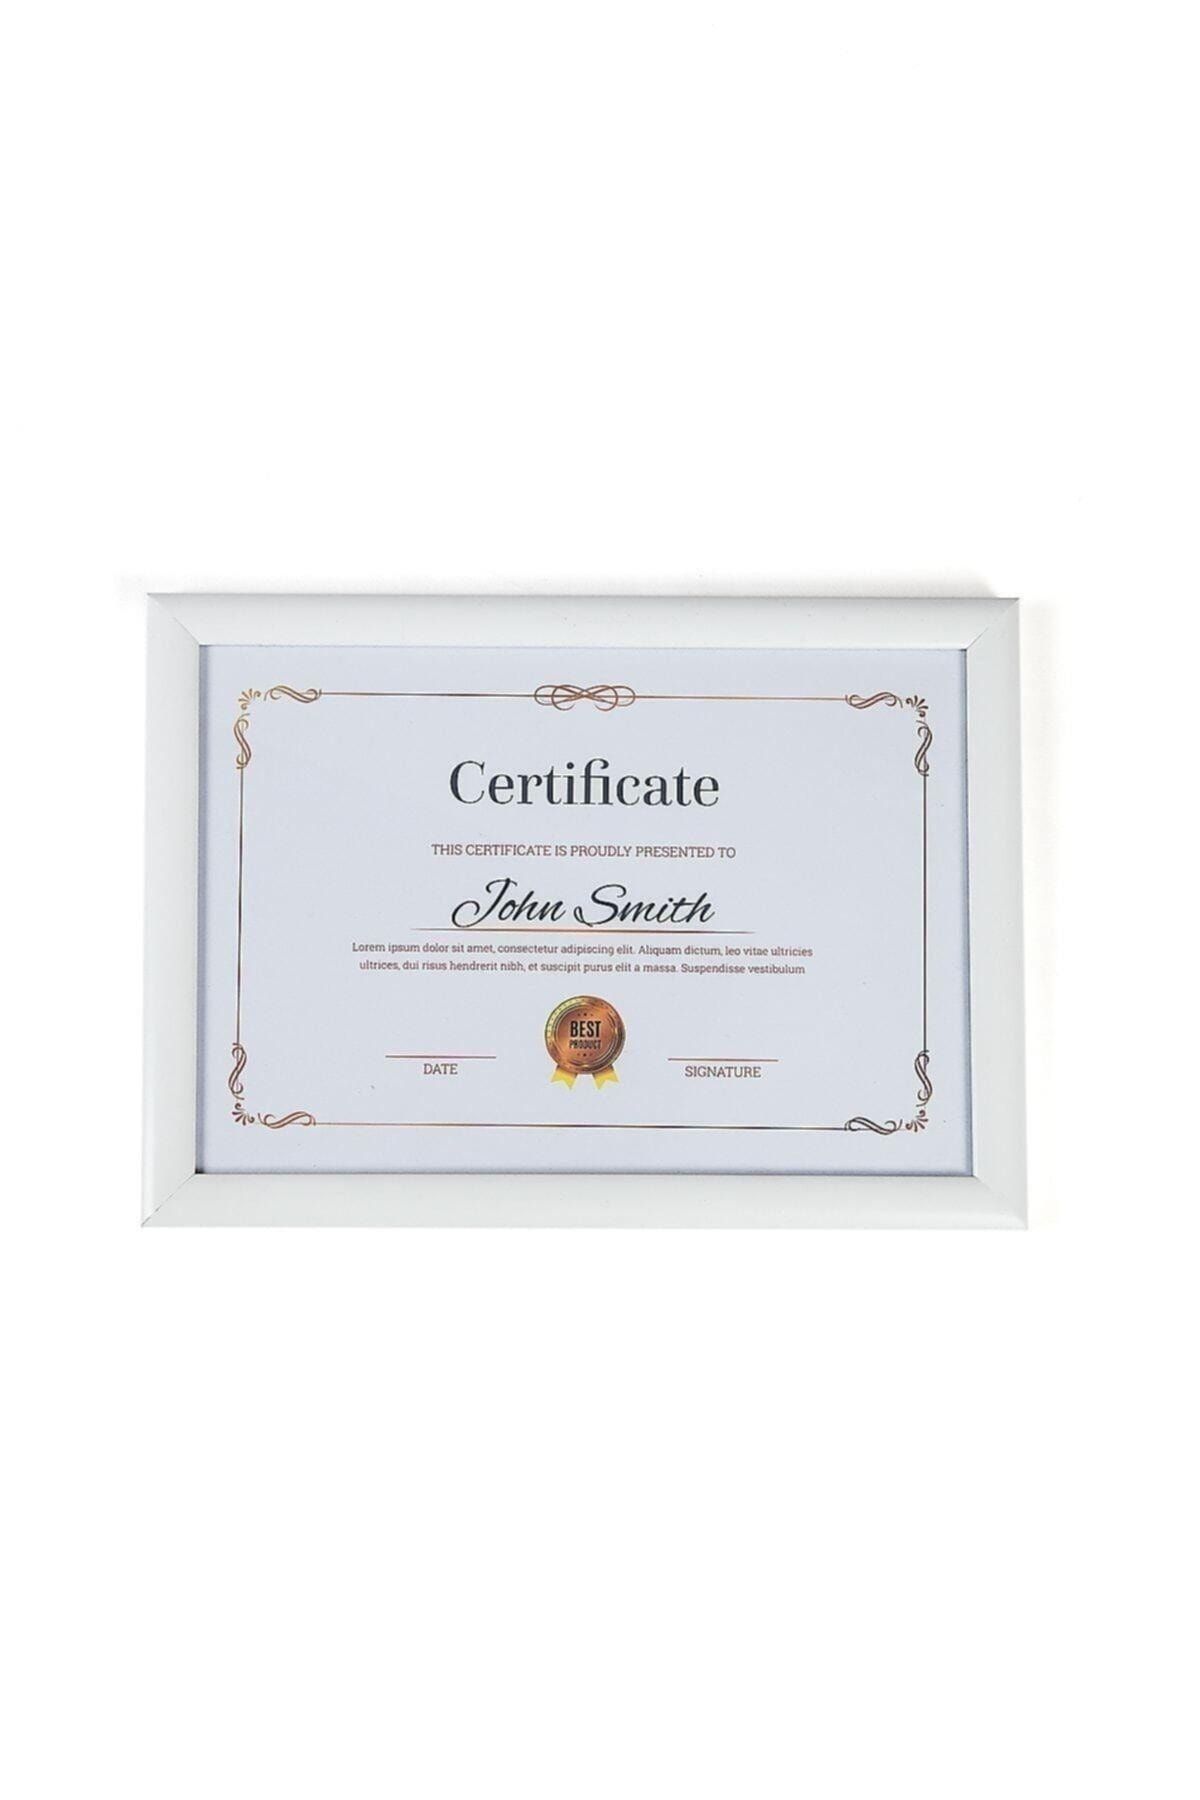 Raven Klasik A4 Çerçeve Beyaz Kırılmaz Pvc Camlı 21x30 Sertifika Diploma Belge Fotoğraf Için 002